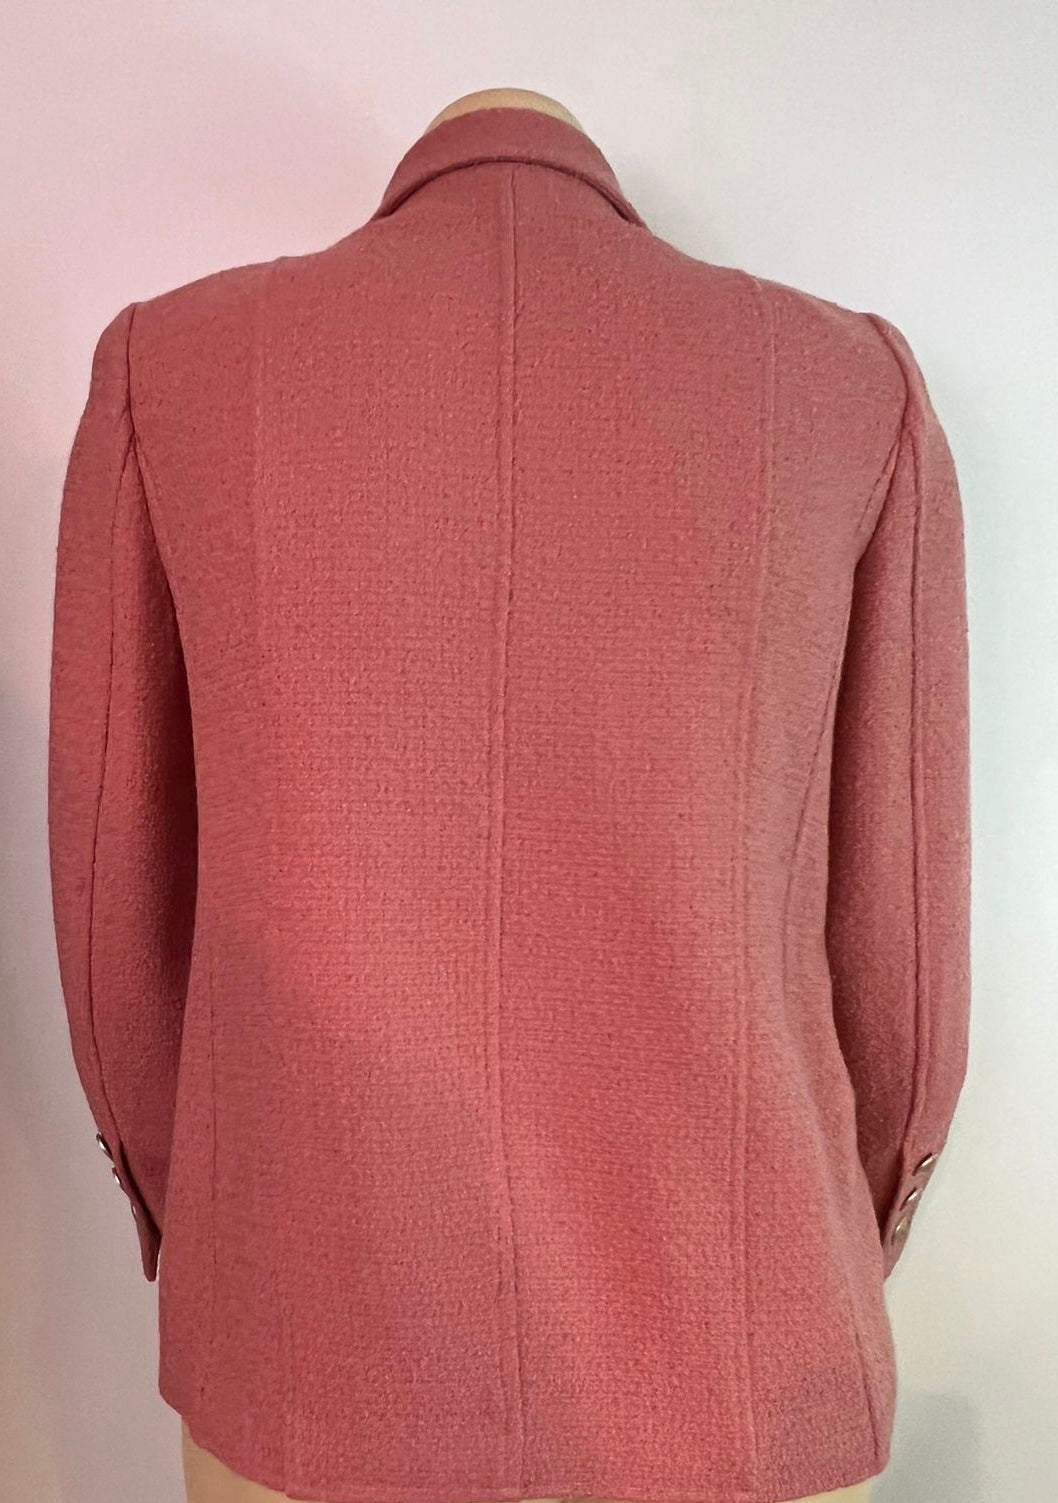 CHANEL Pristine 97A 1997 Vintage Pink BOUCLE Tweed Jacket Karl Lagerfeld 34  US2  eBay